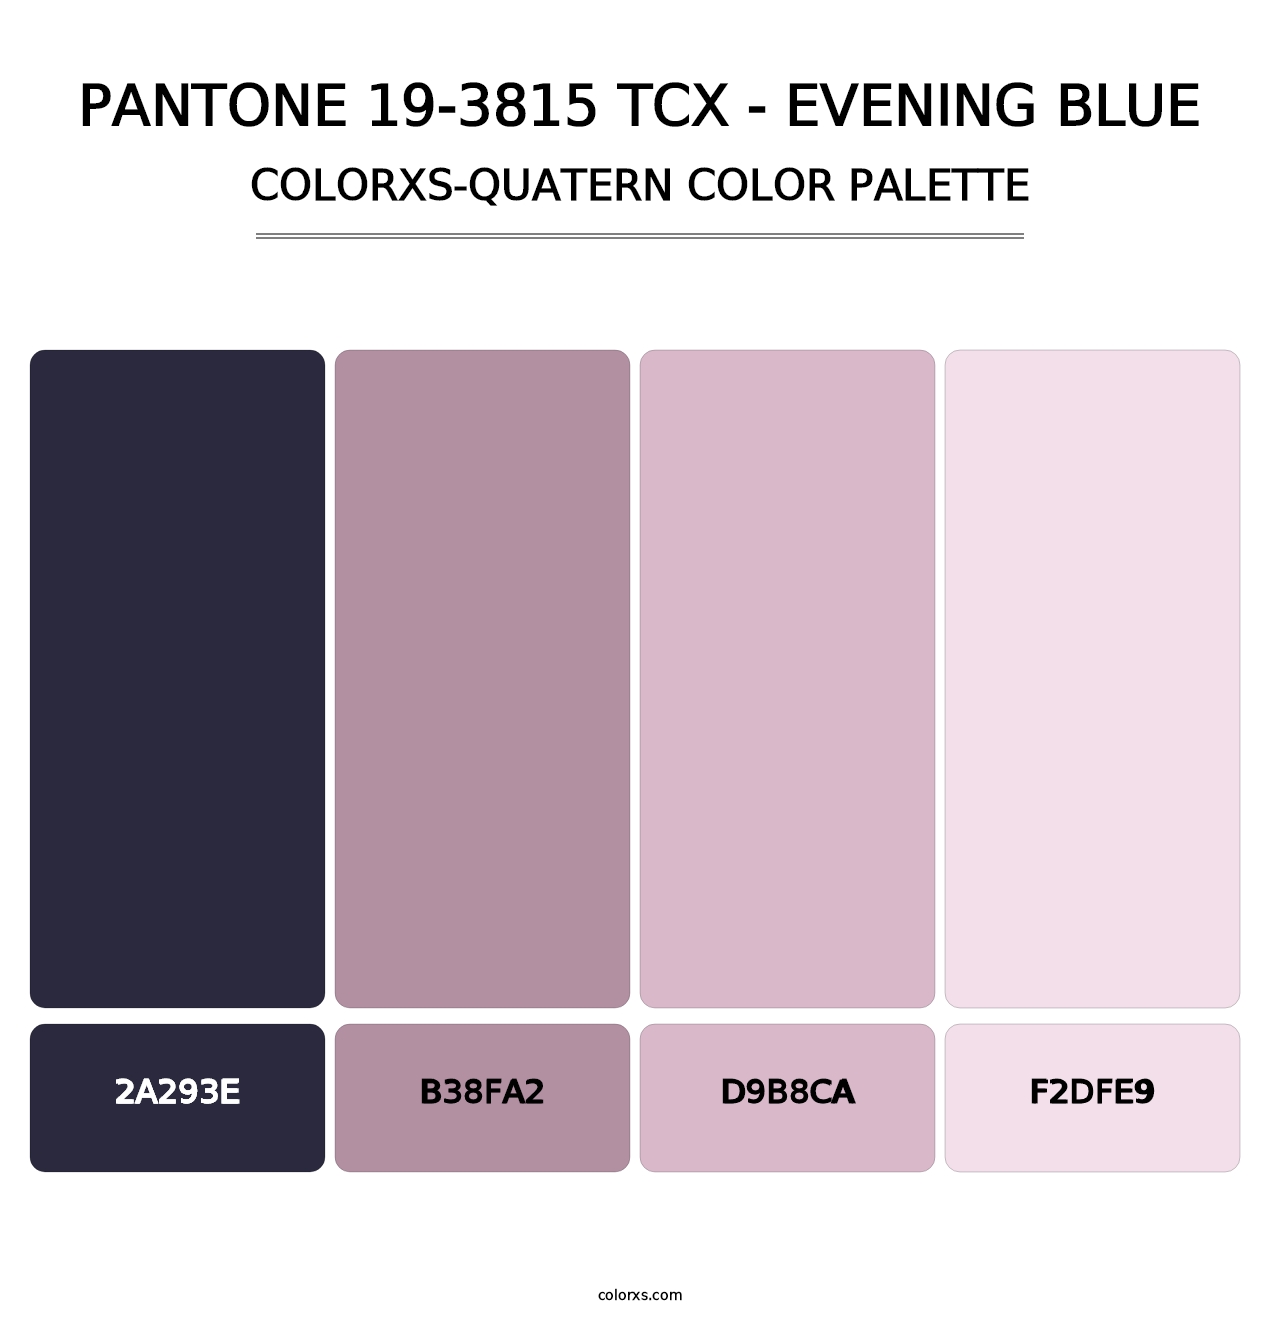 PANTONE 19-3815 TCX - Evening Blue - Colorxs Quatern Palette